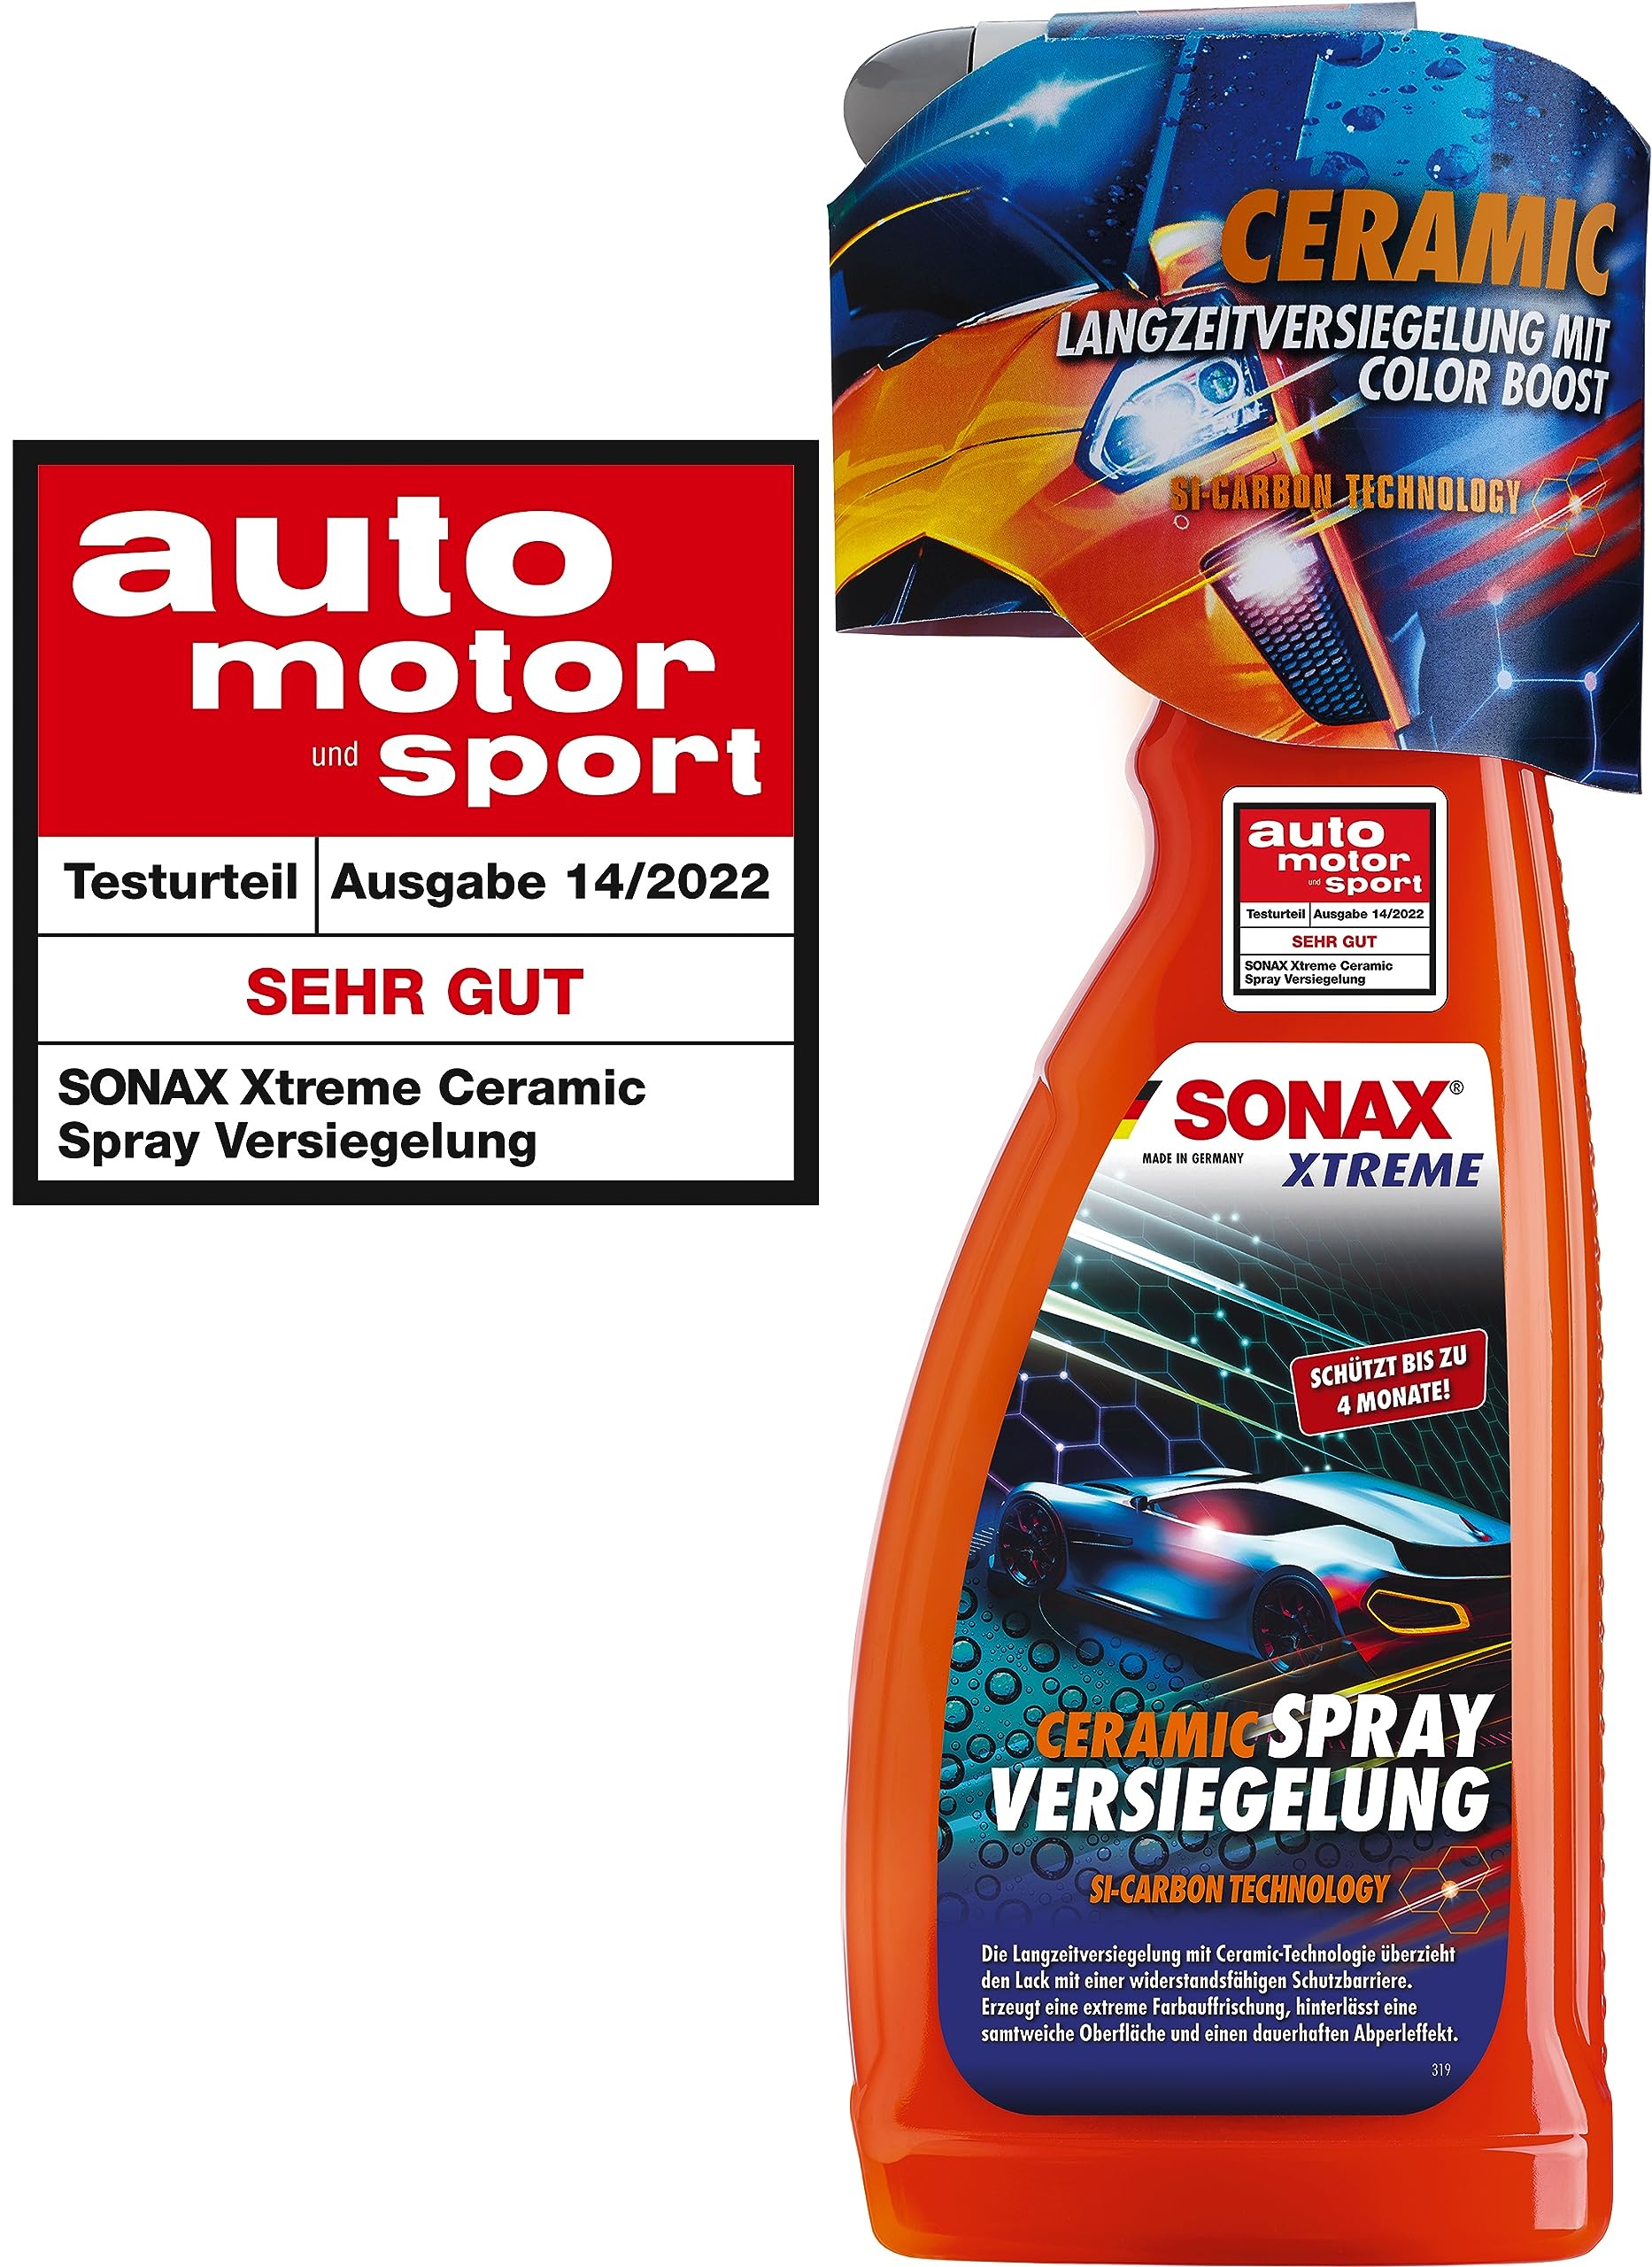 SONAX XTREME Ceramic SprayVersiegelung (750ml) überzieht den Lack mit einer Schutzbarriere, schützt vor Schmutz und Insekten. DIE Auto Keramikversiegelung schlechthin, Transparent, Art-Nr 02574000 von SONAX